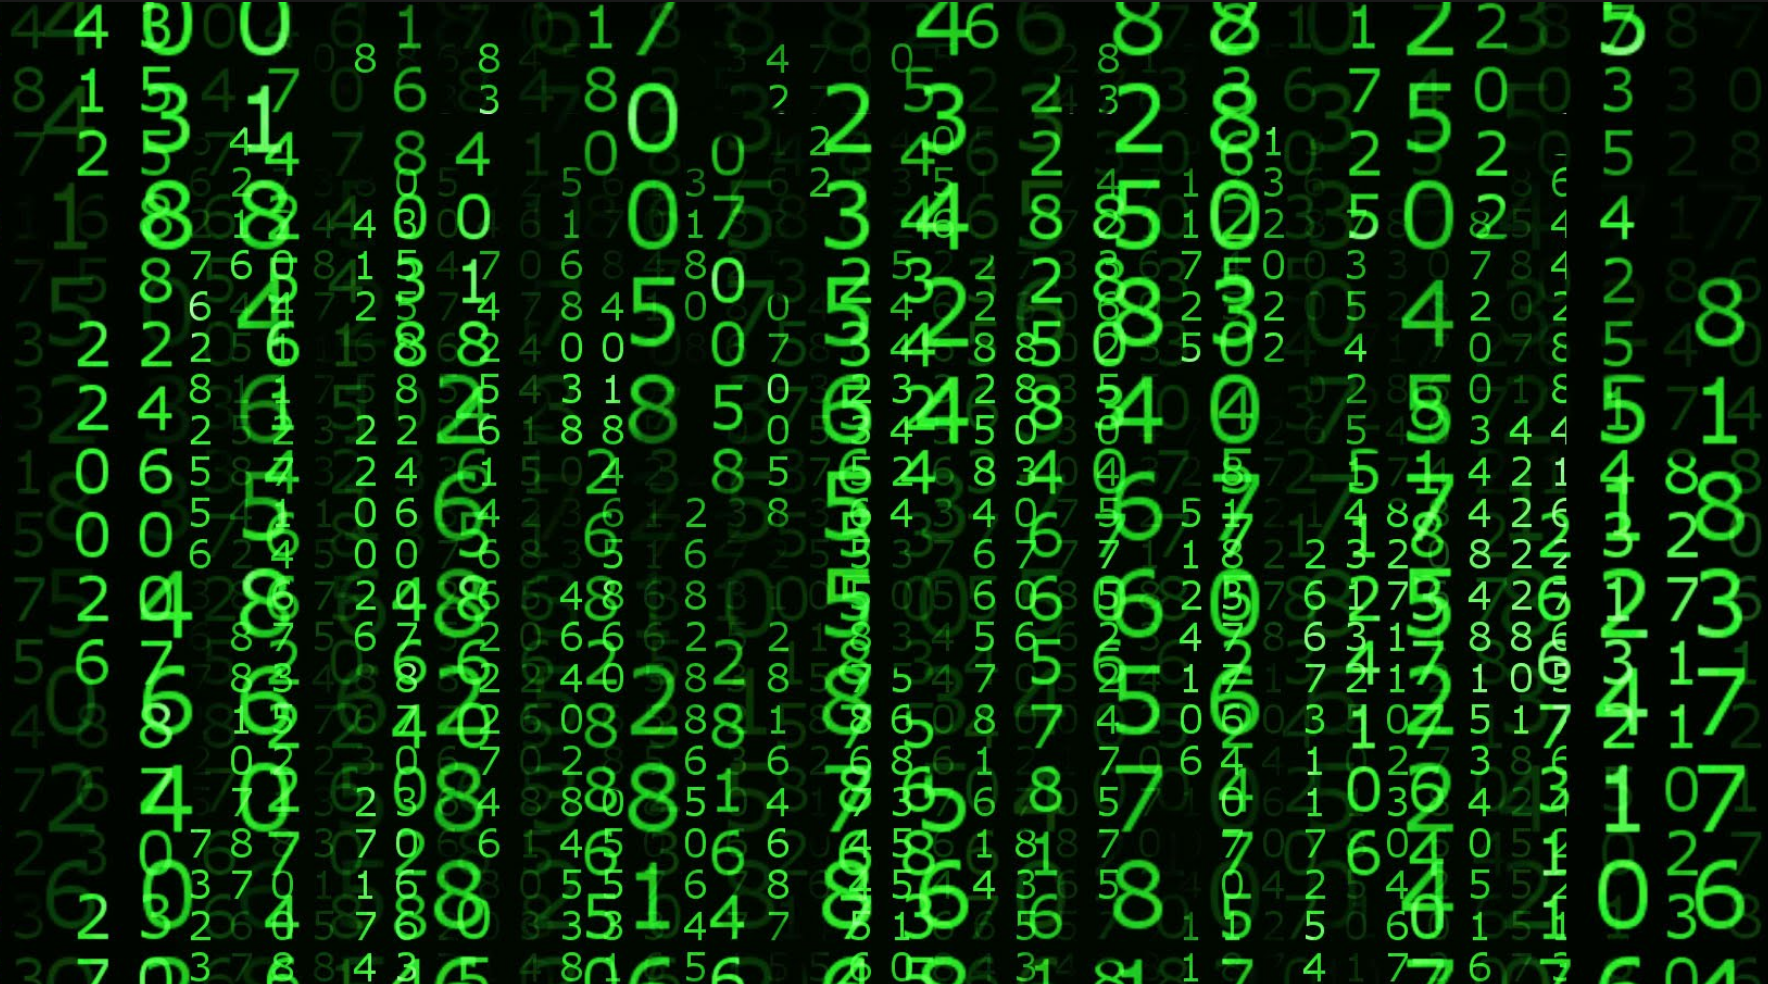 La matrix de datos